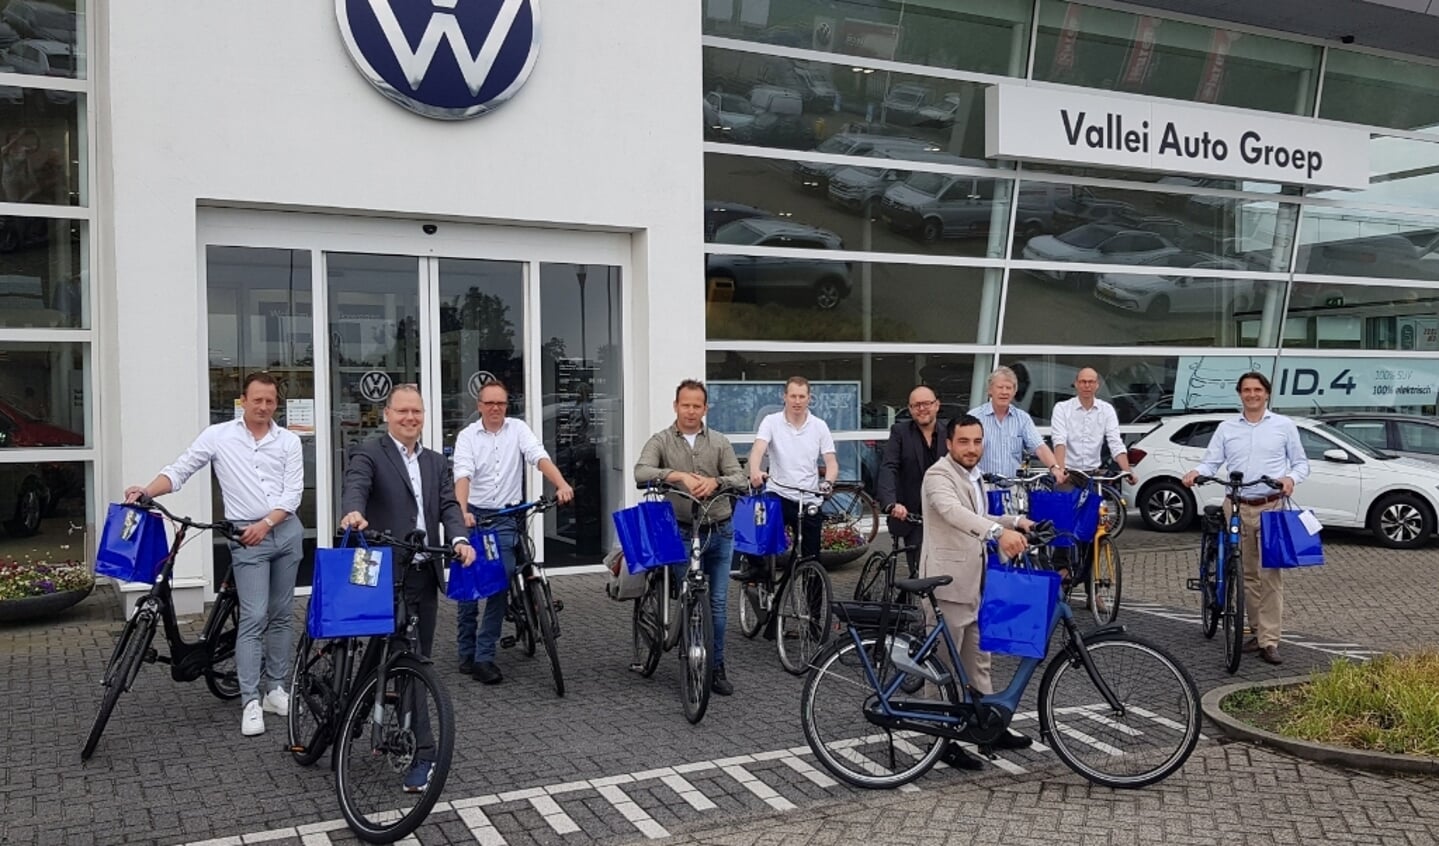 De aftrap van de campagne vond plaats bij de Vallei Auto Groep, die convenantpartner is van Regio Foodvalley Mobiliteit. 